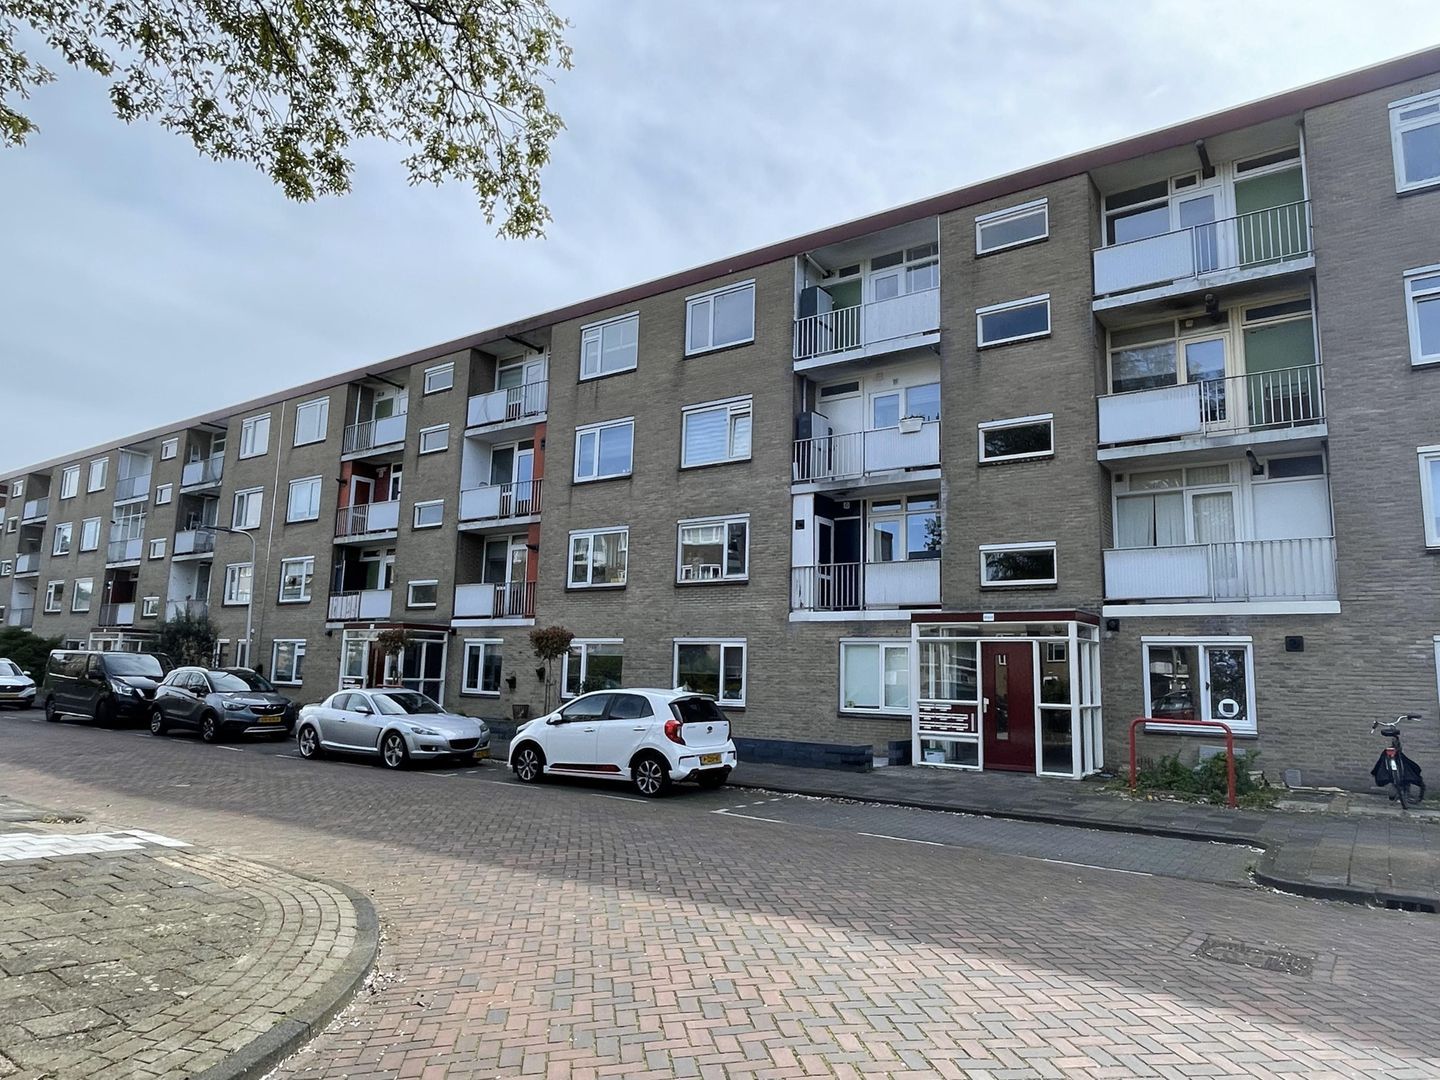 Bekijk foto 1/17 van apartment in Noordwijk